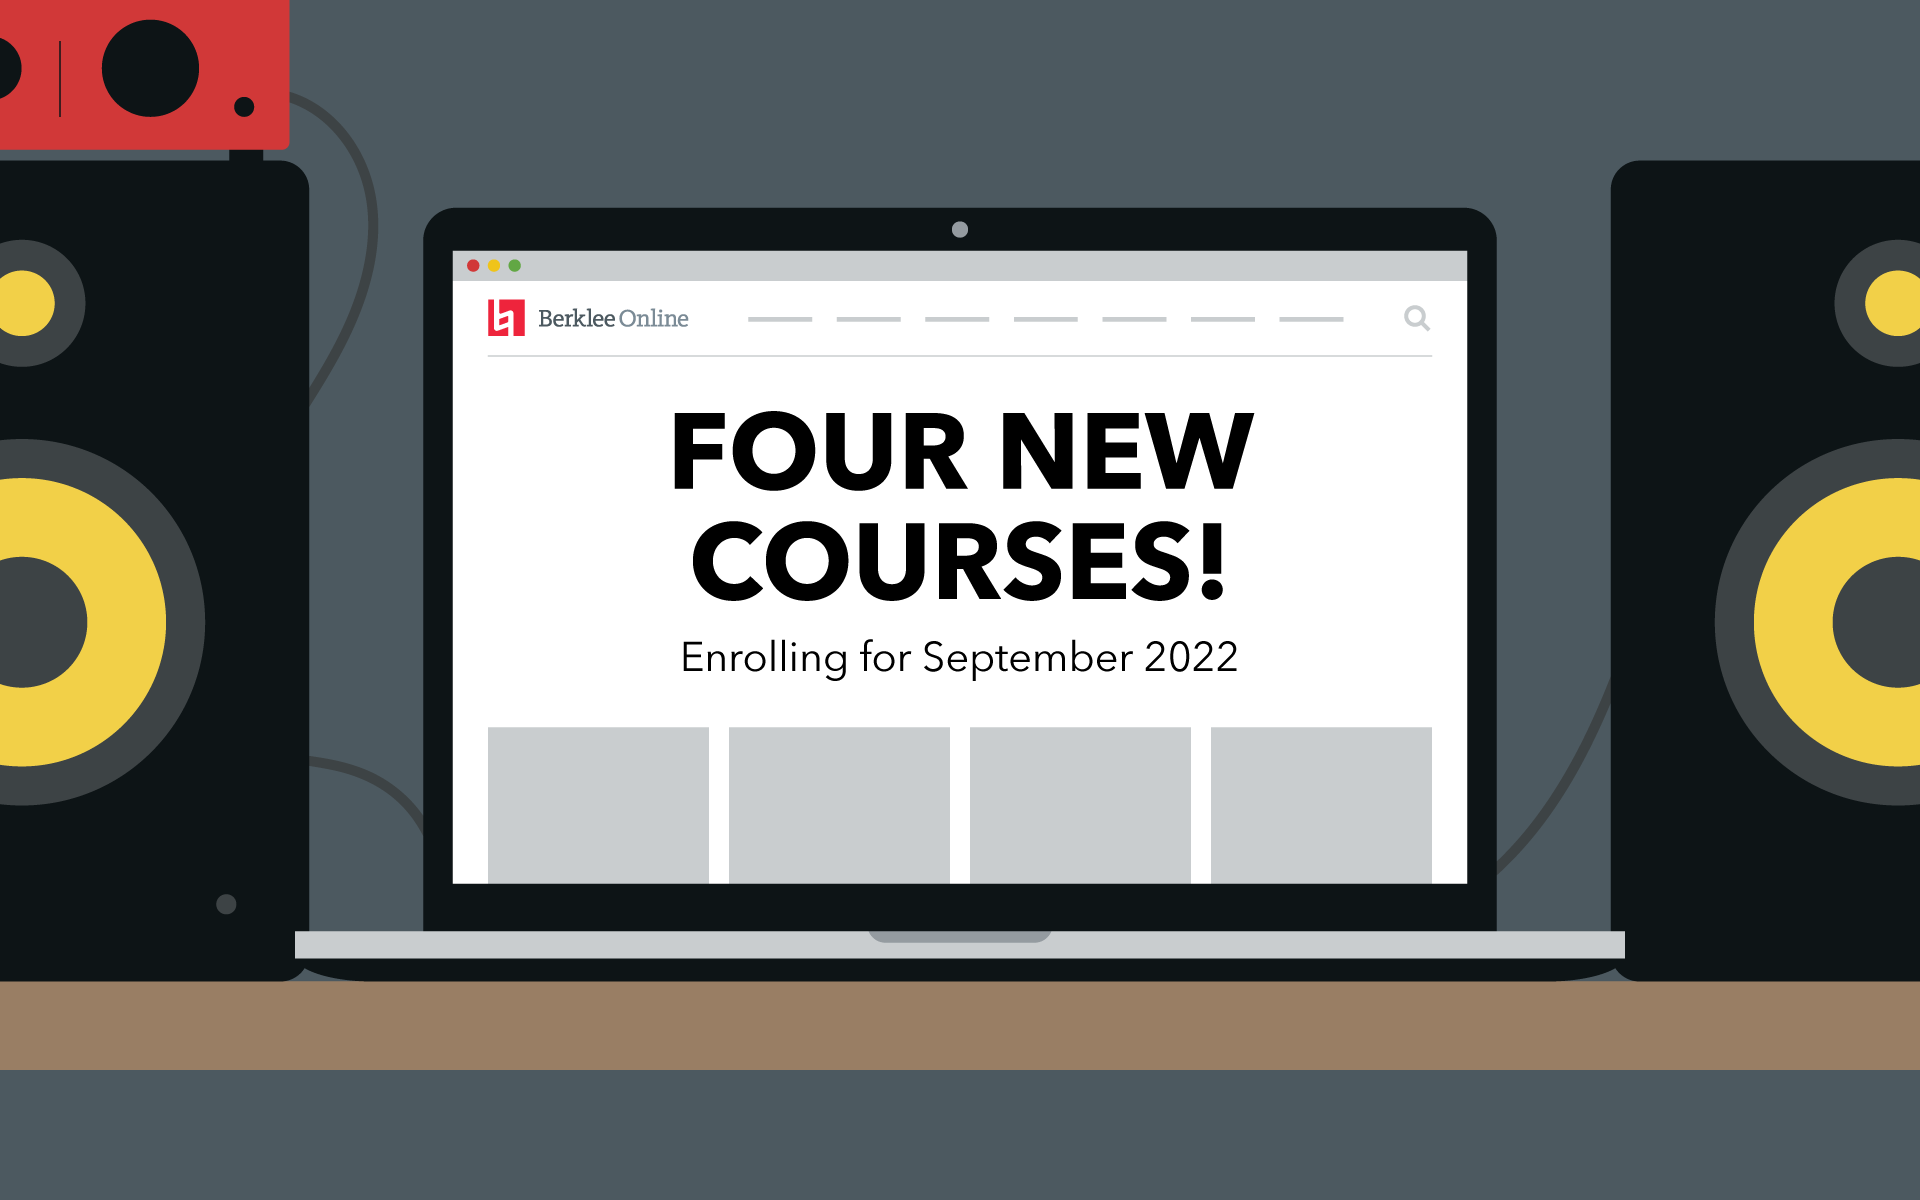 Four New Berklee Online Courses Enrolling for September 2022